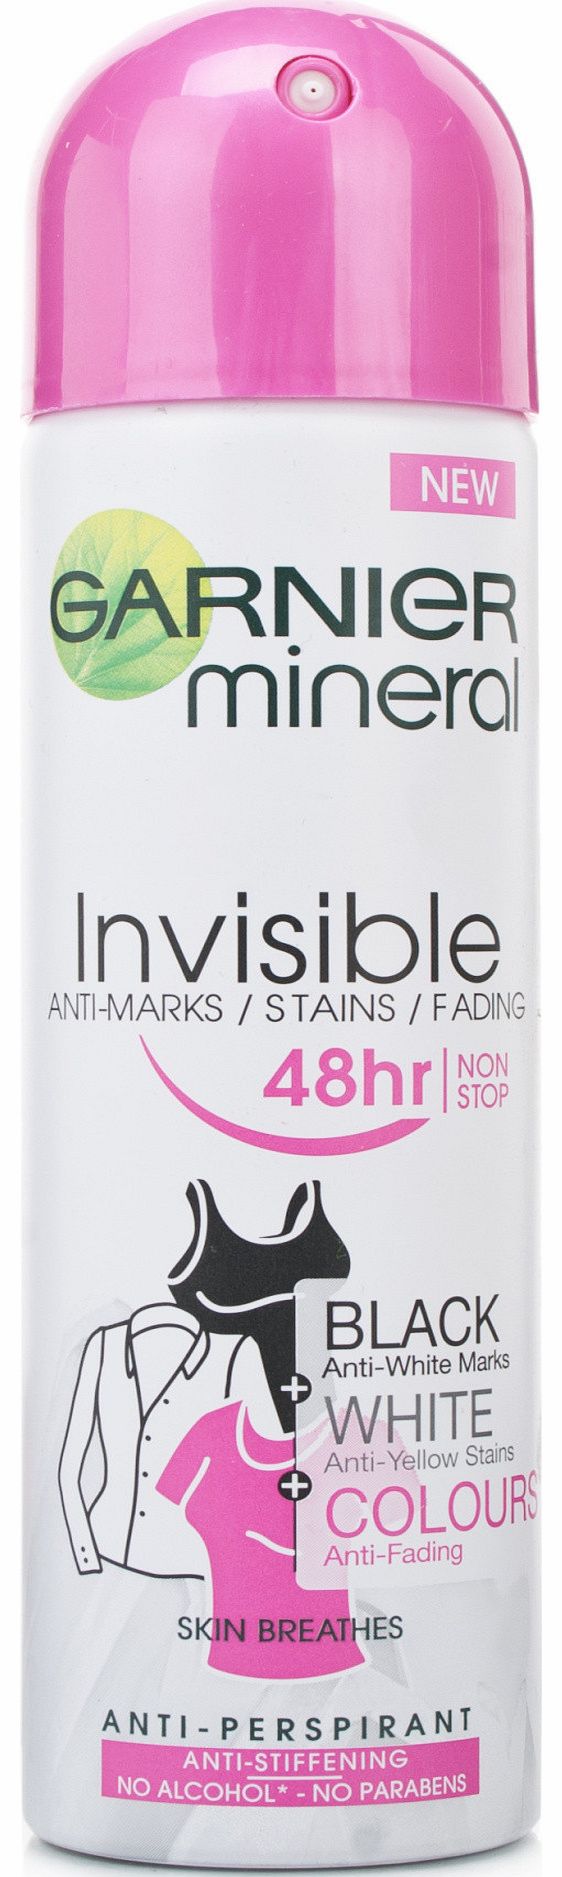 Garnier Mineral Invisible Anti-White